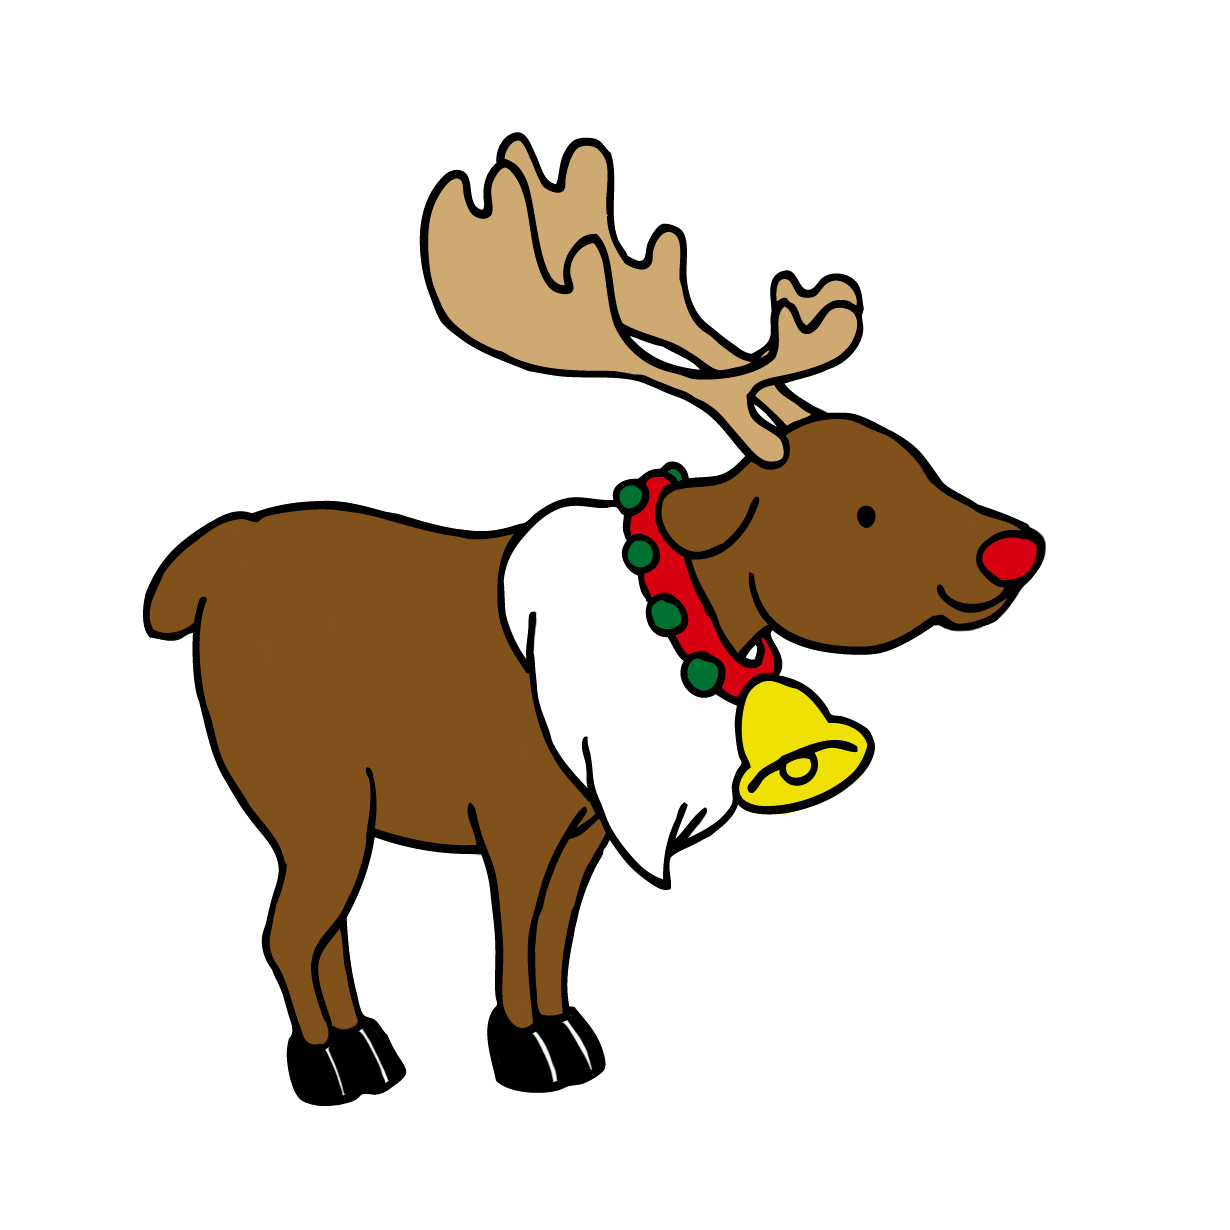 クリスマスの可愛いトナカイ動物イラスト Free Illustration